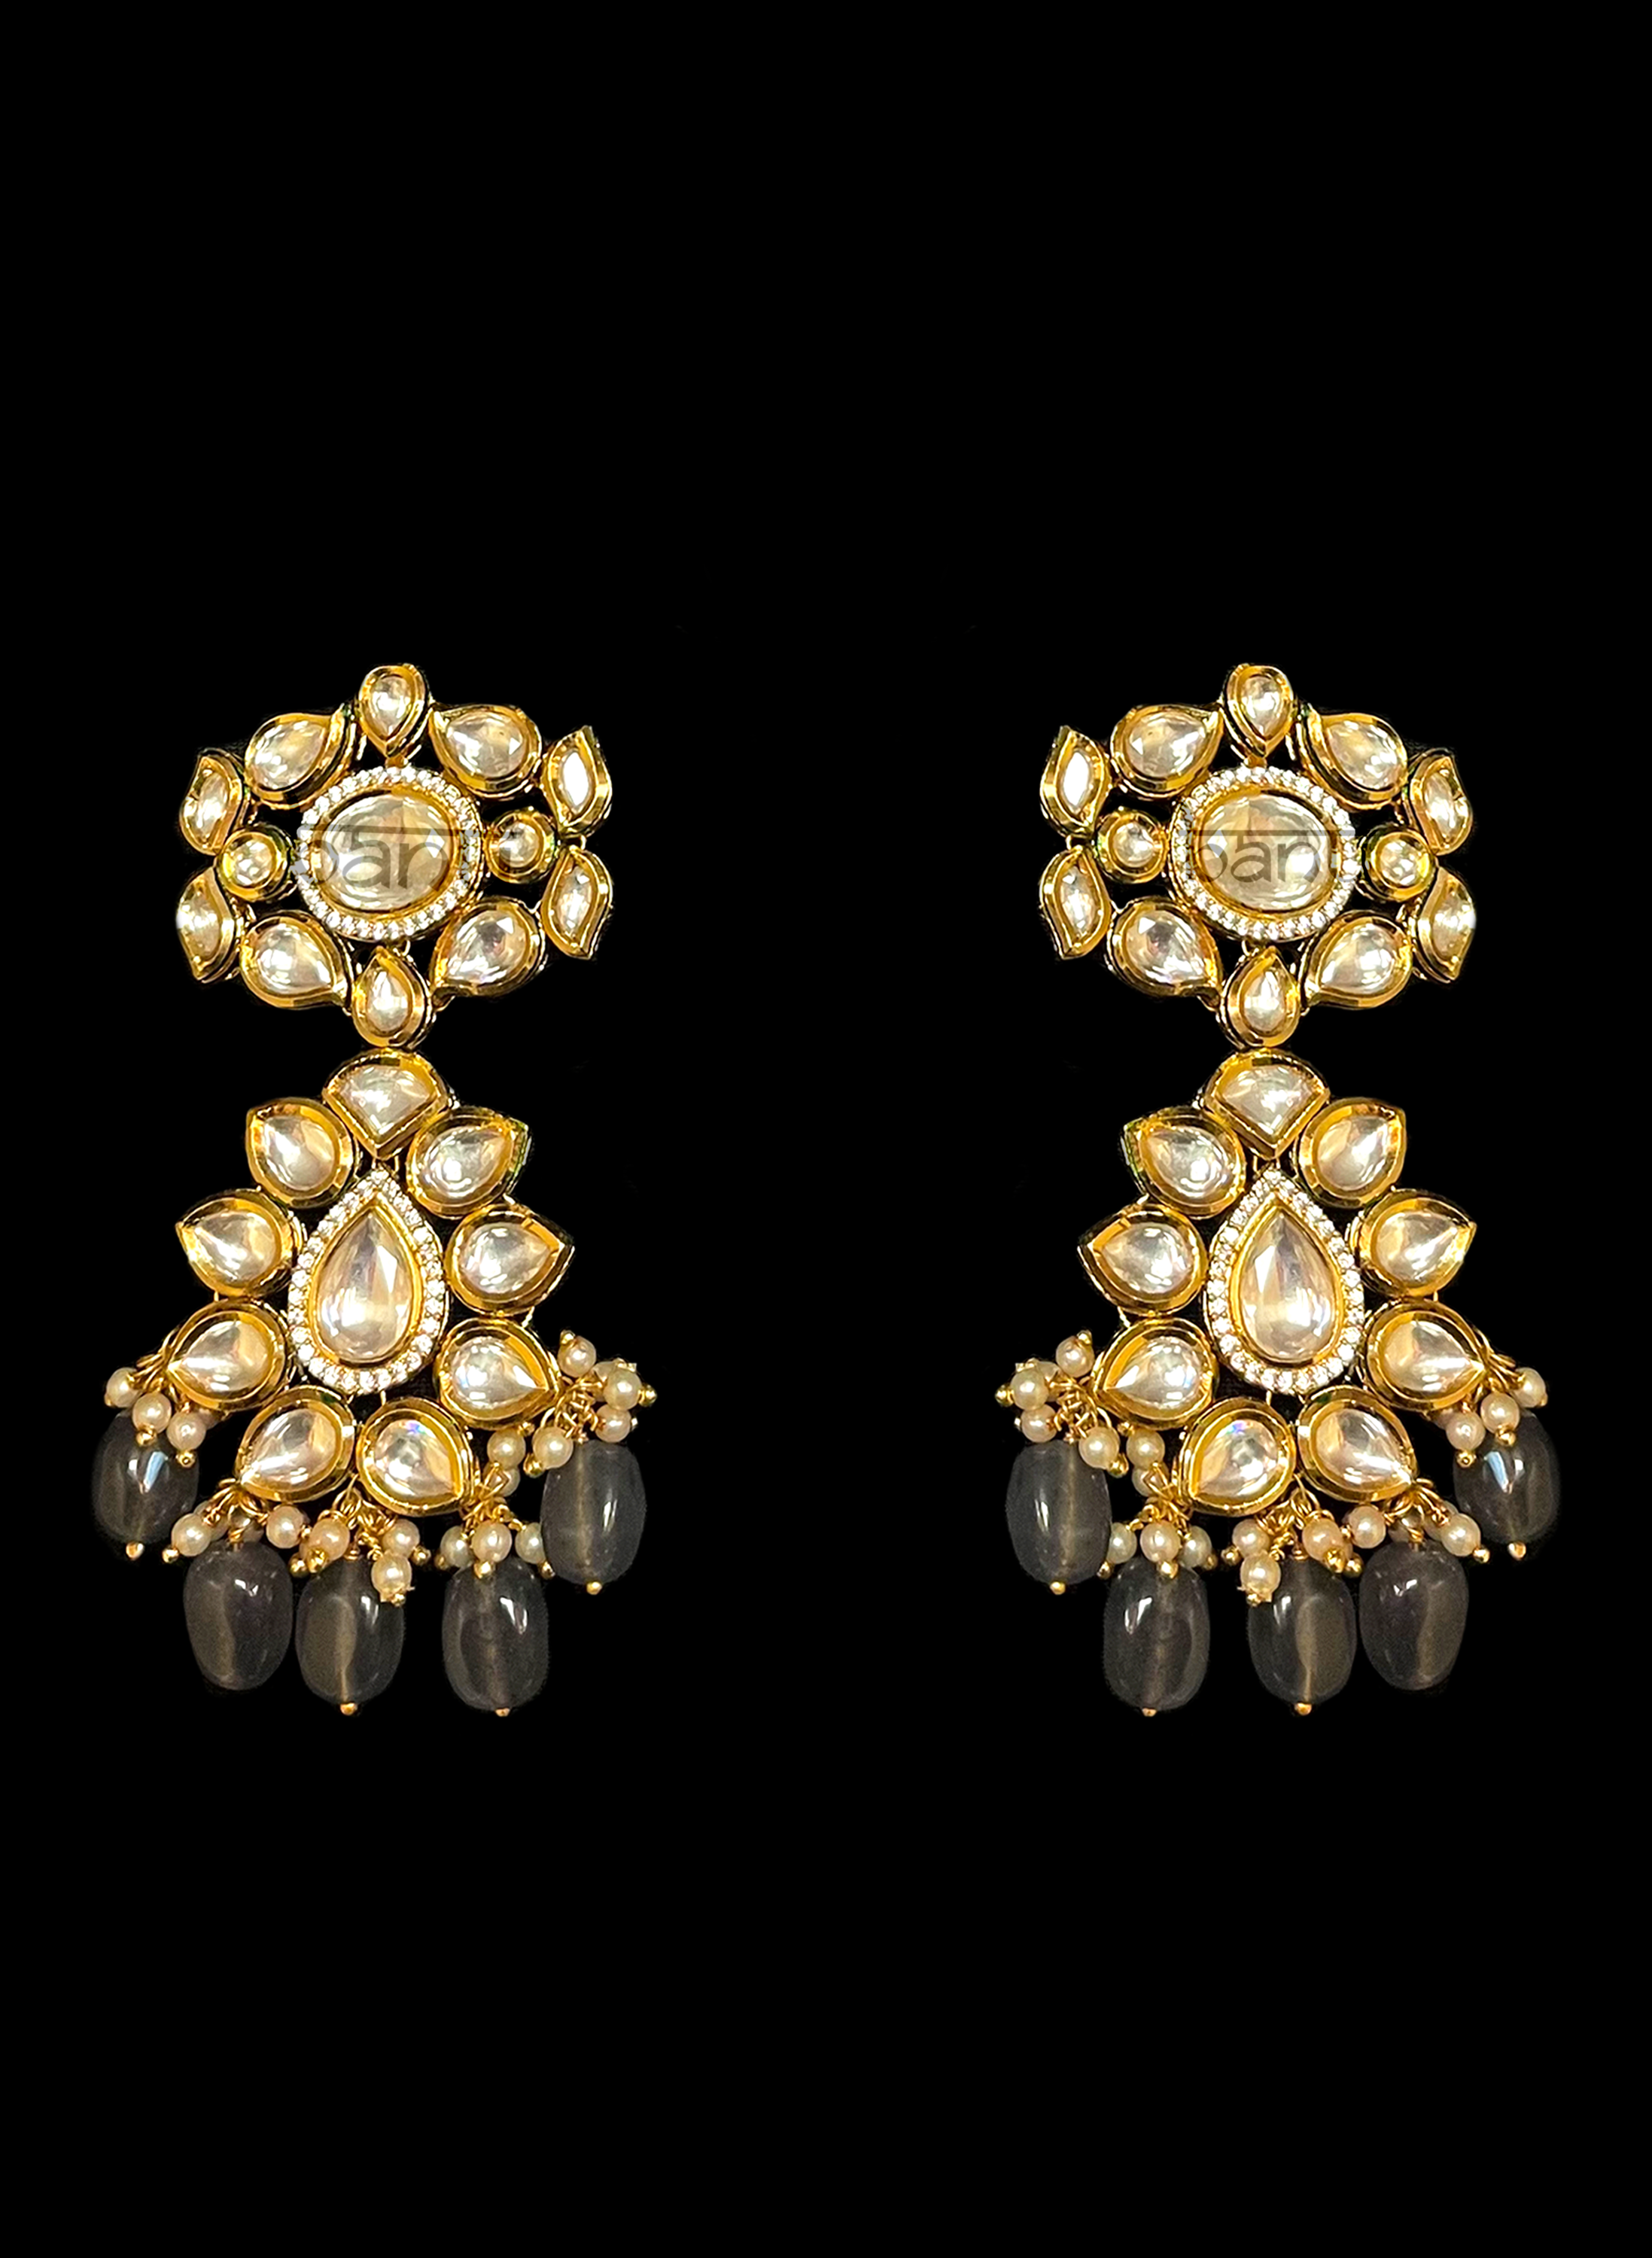 Kundan jhumka earrings with grey onyx gem drops